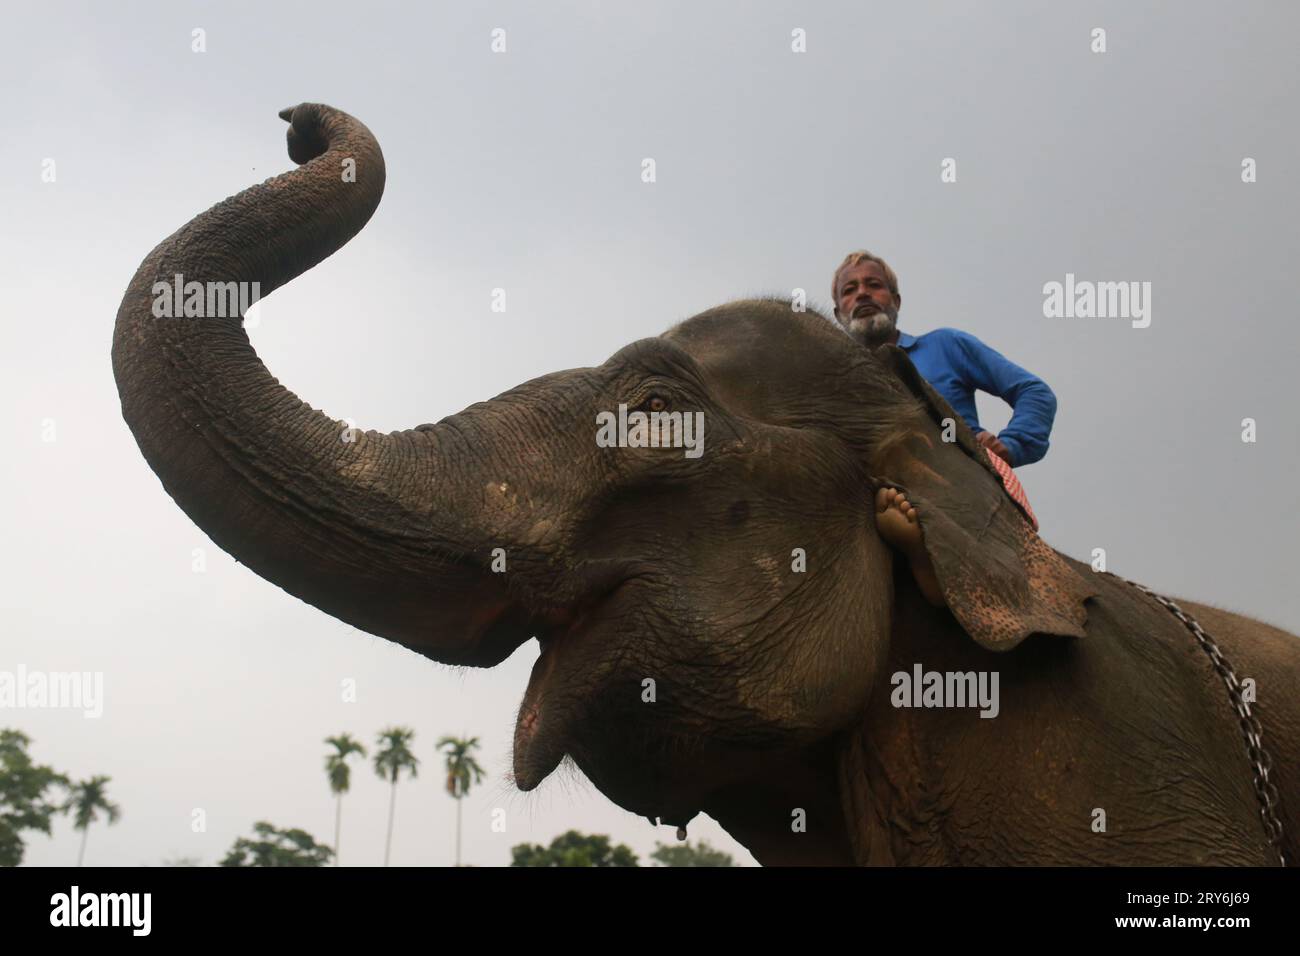 MOULVIBAZAR, BANGLADESH- 26 JANVIER 2022 : un homme s'occupe d'un éléphant pendant une période d'entraînement à Moulvibazar, Bangladesh, le 26 janvier 2022. Banque D'Images